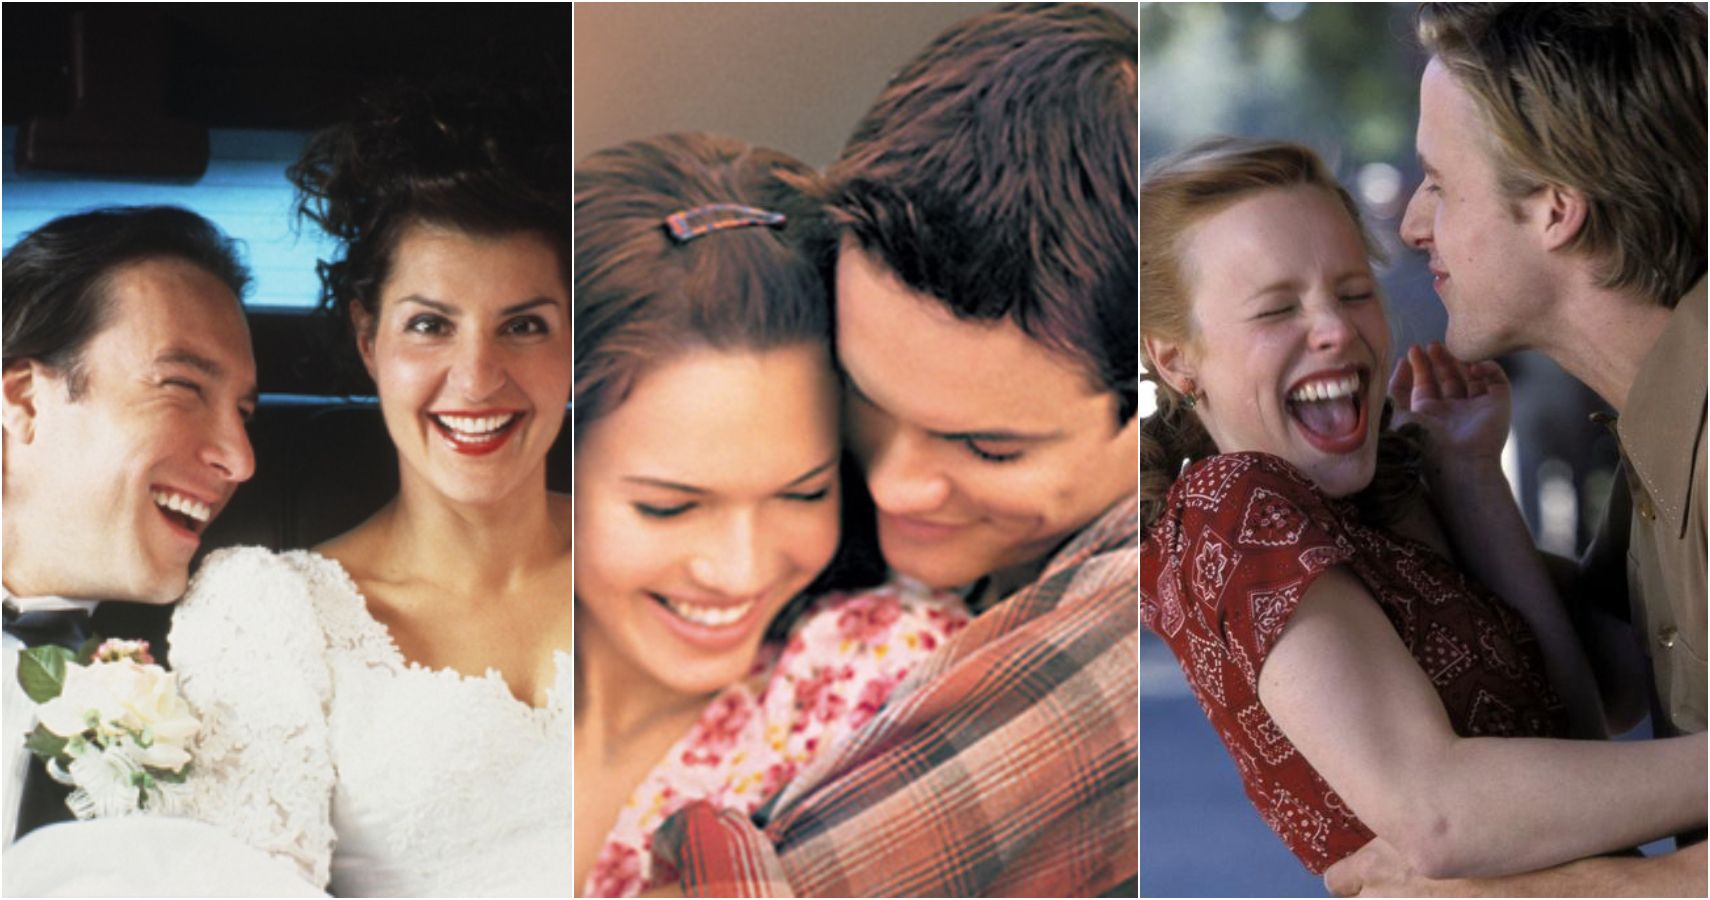 Dez casais de filmes românticos dos anos 2000 que amávamos